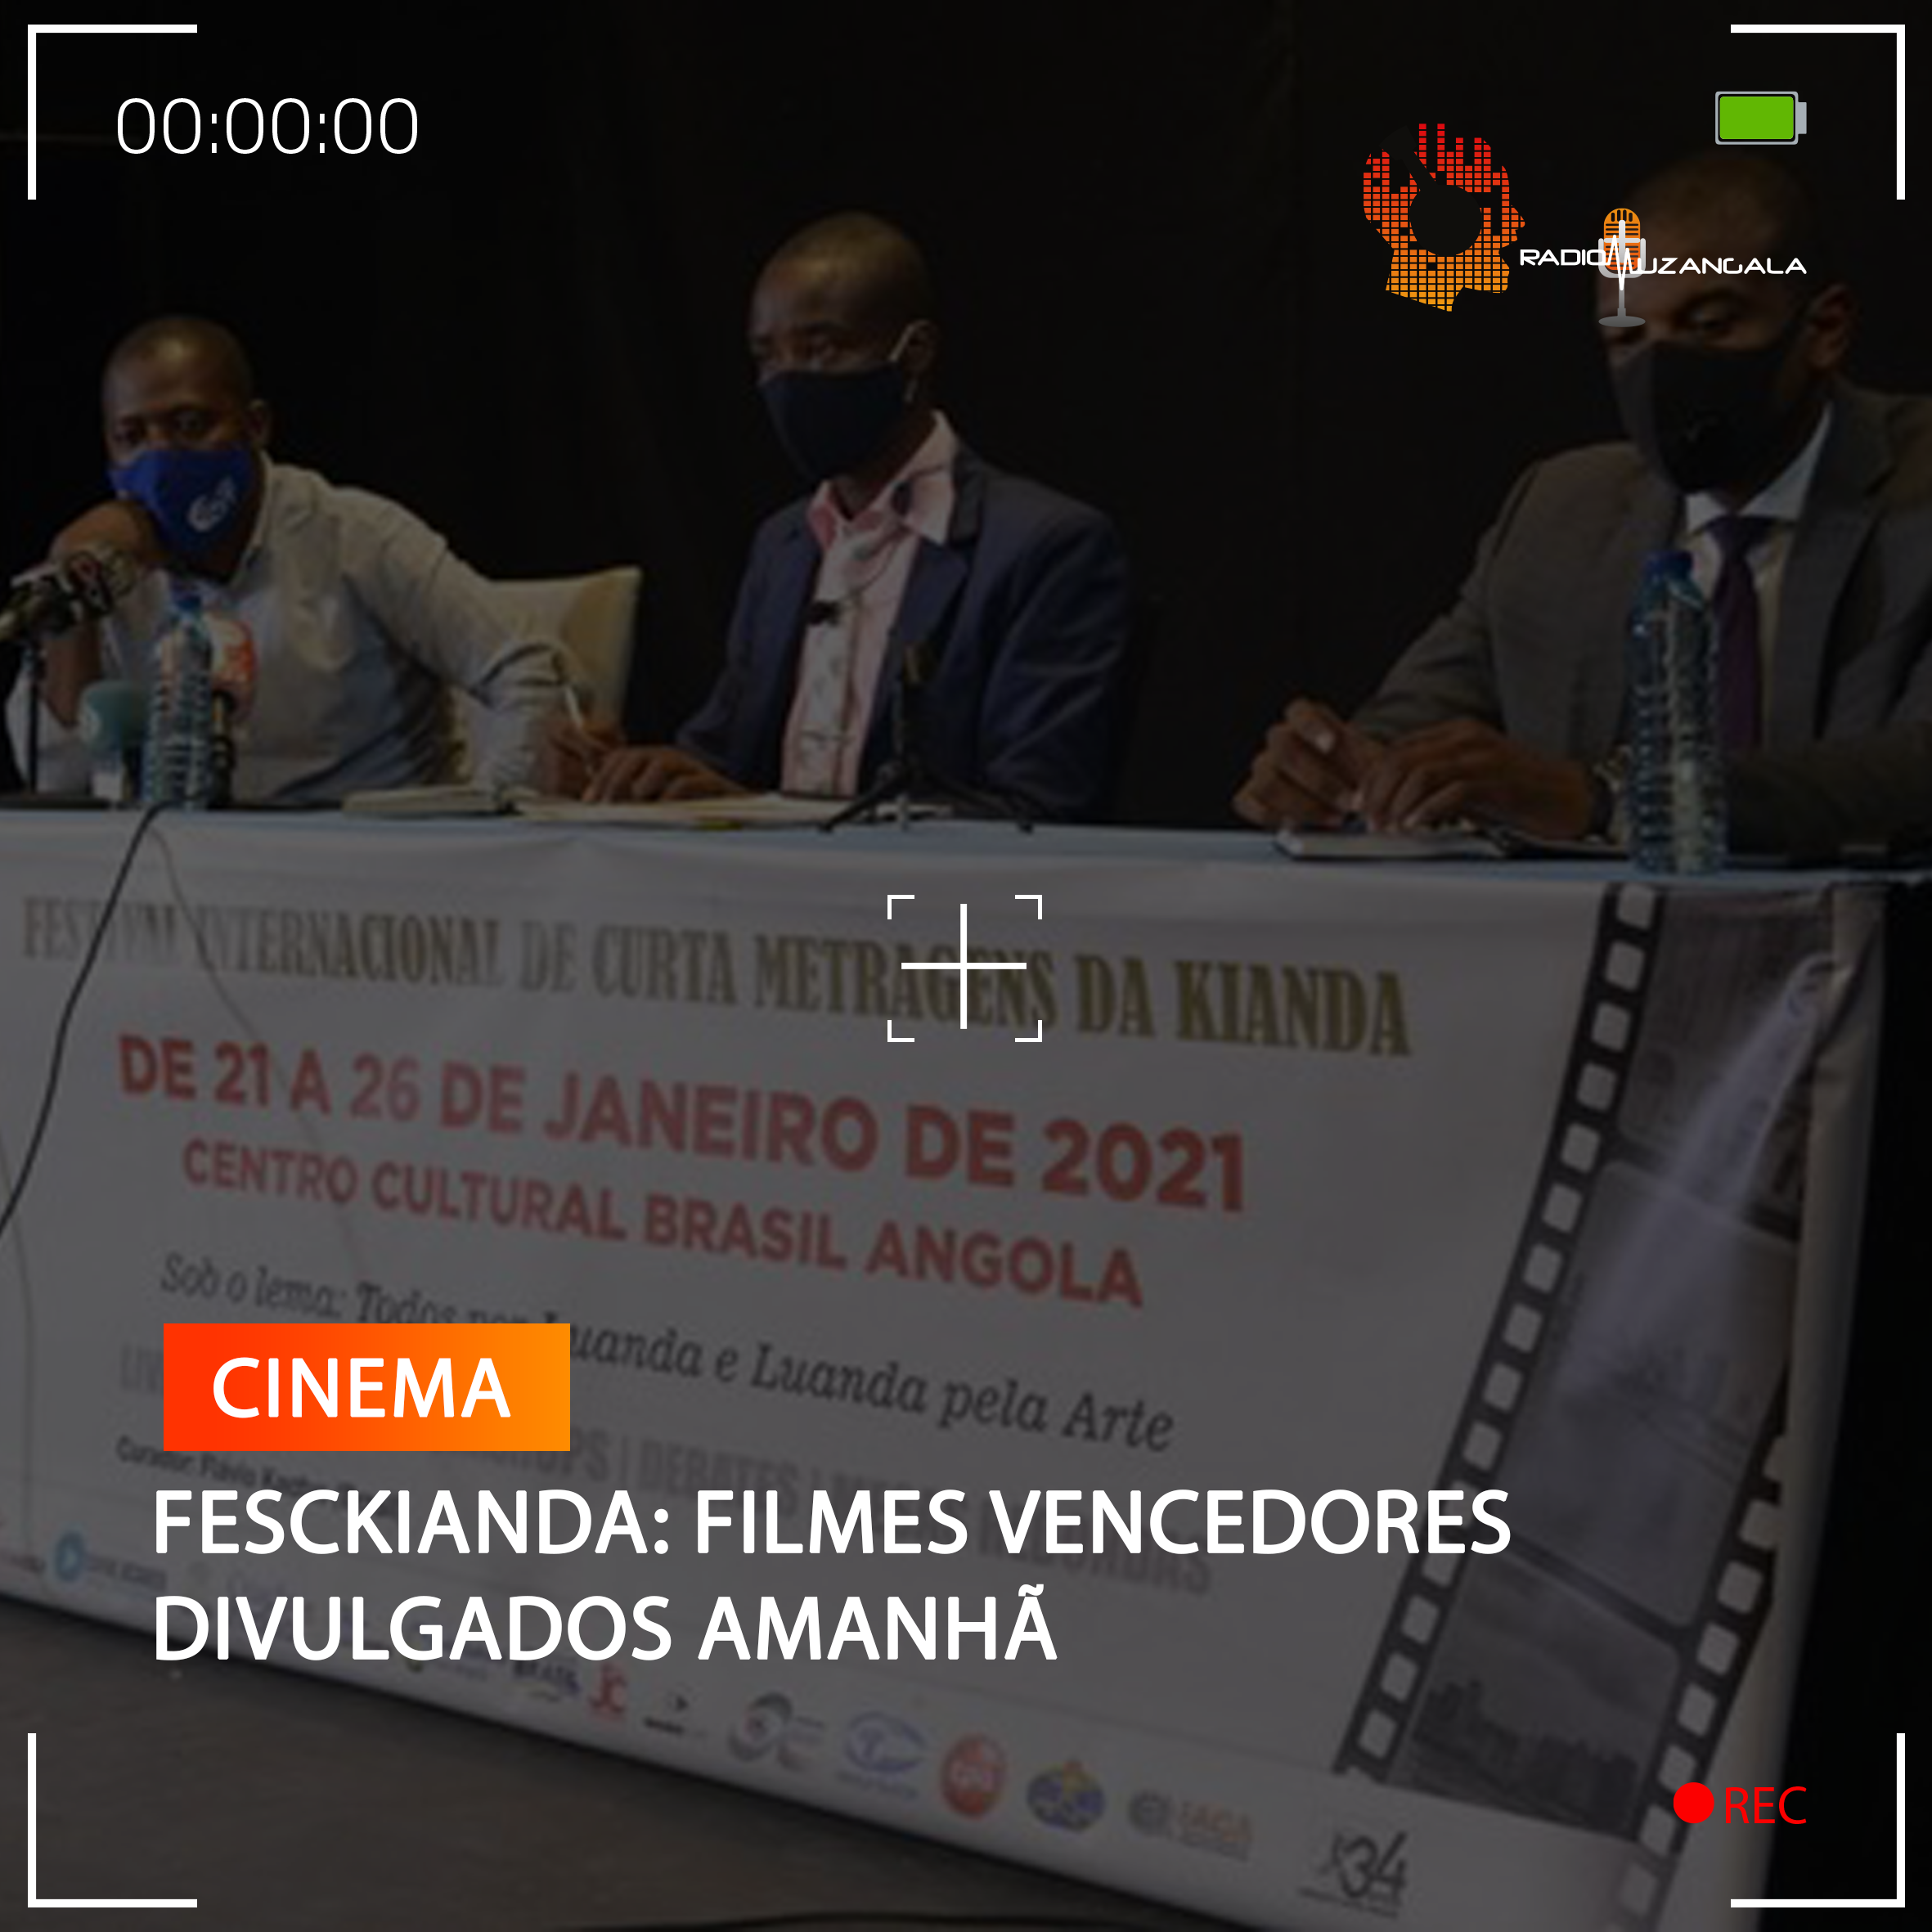  FESCKIANDA: FILMES VENCEDORES DIVULGADOS AMANHÃ